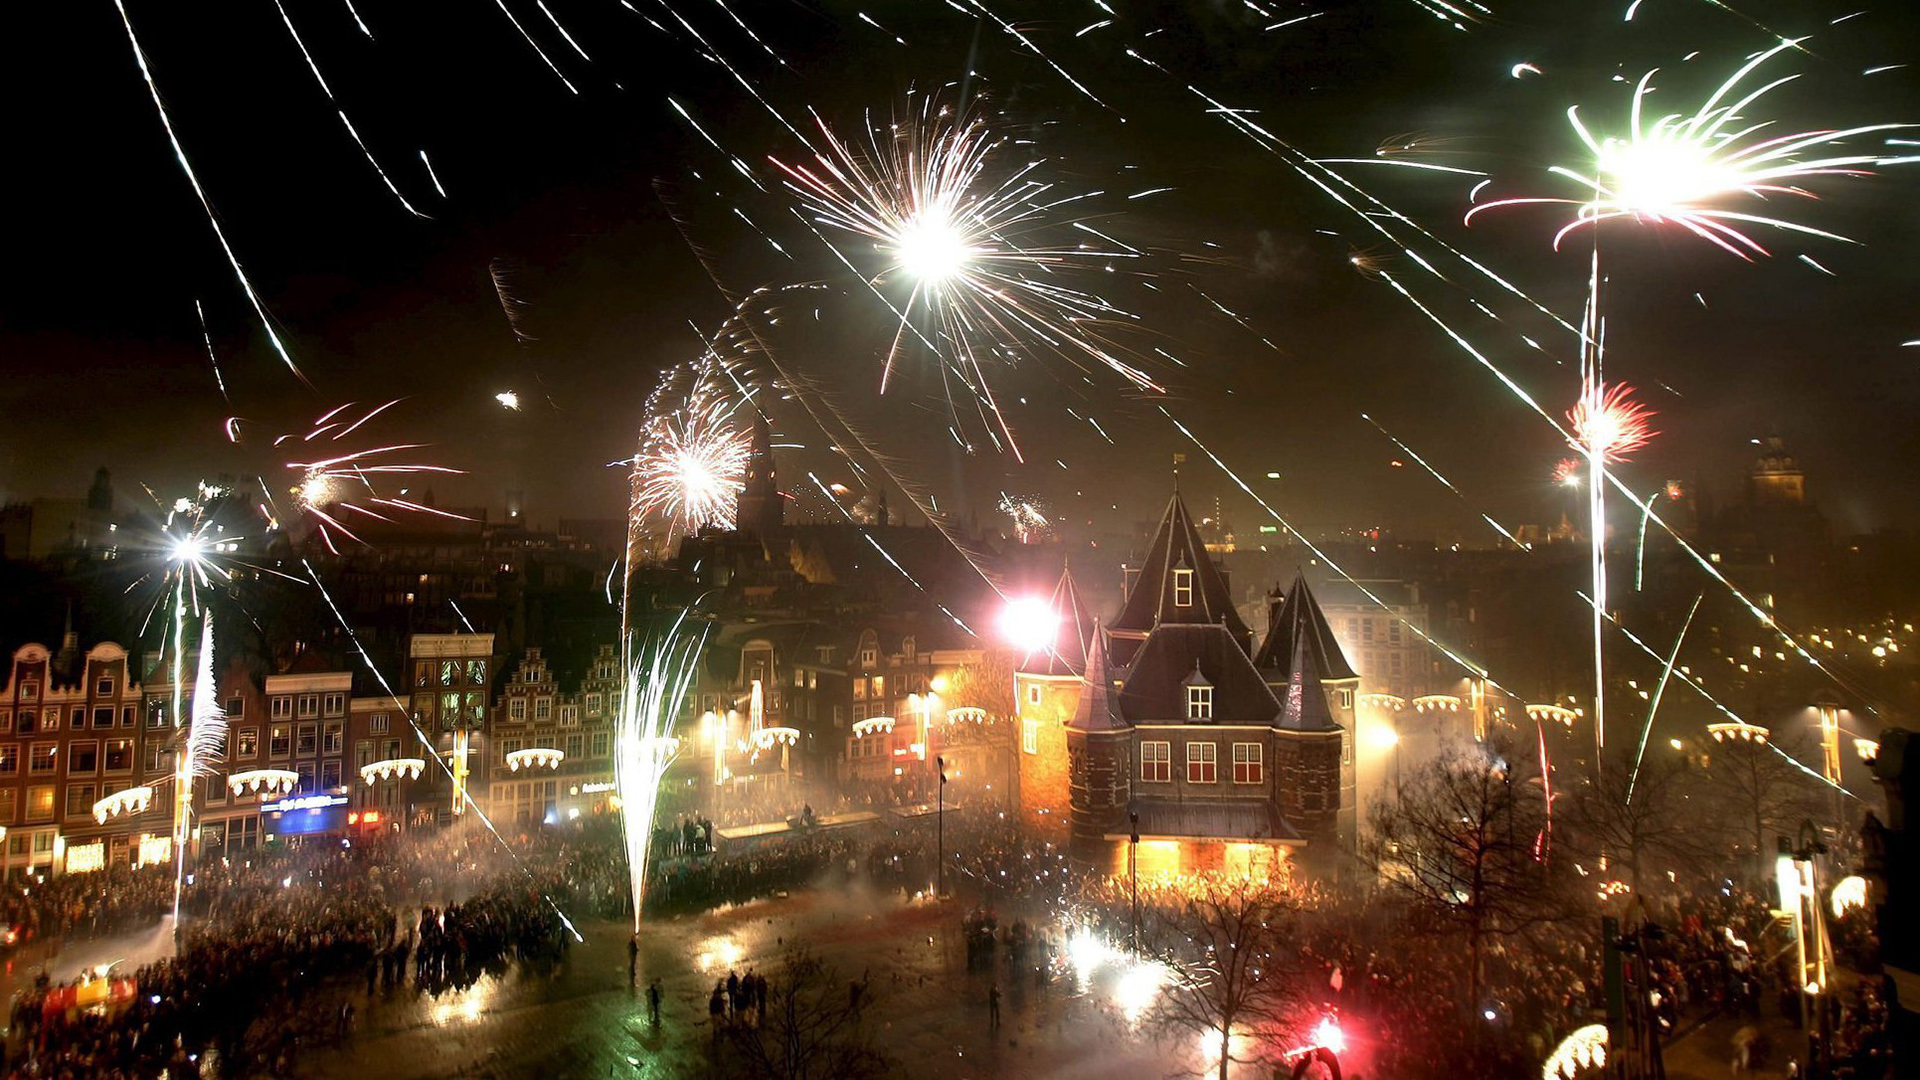 Corona-Liveblog: ++ Niederlande verbieten Feuerwerk zu Silvester ++